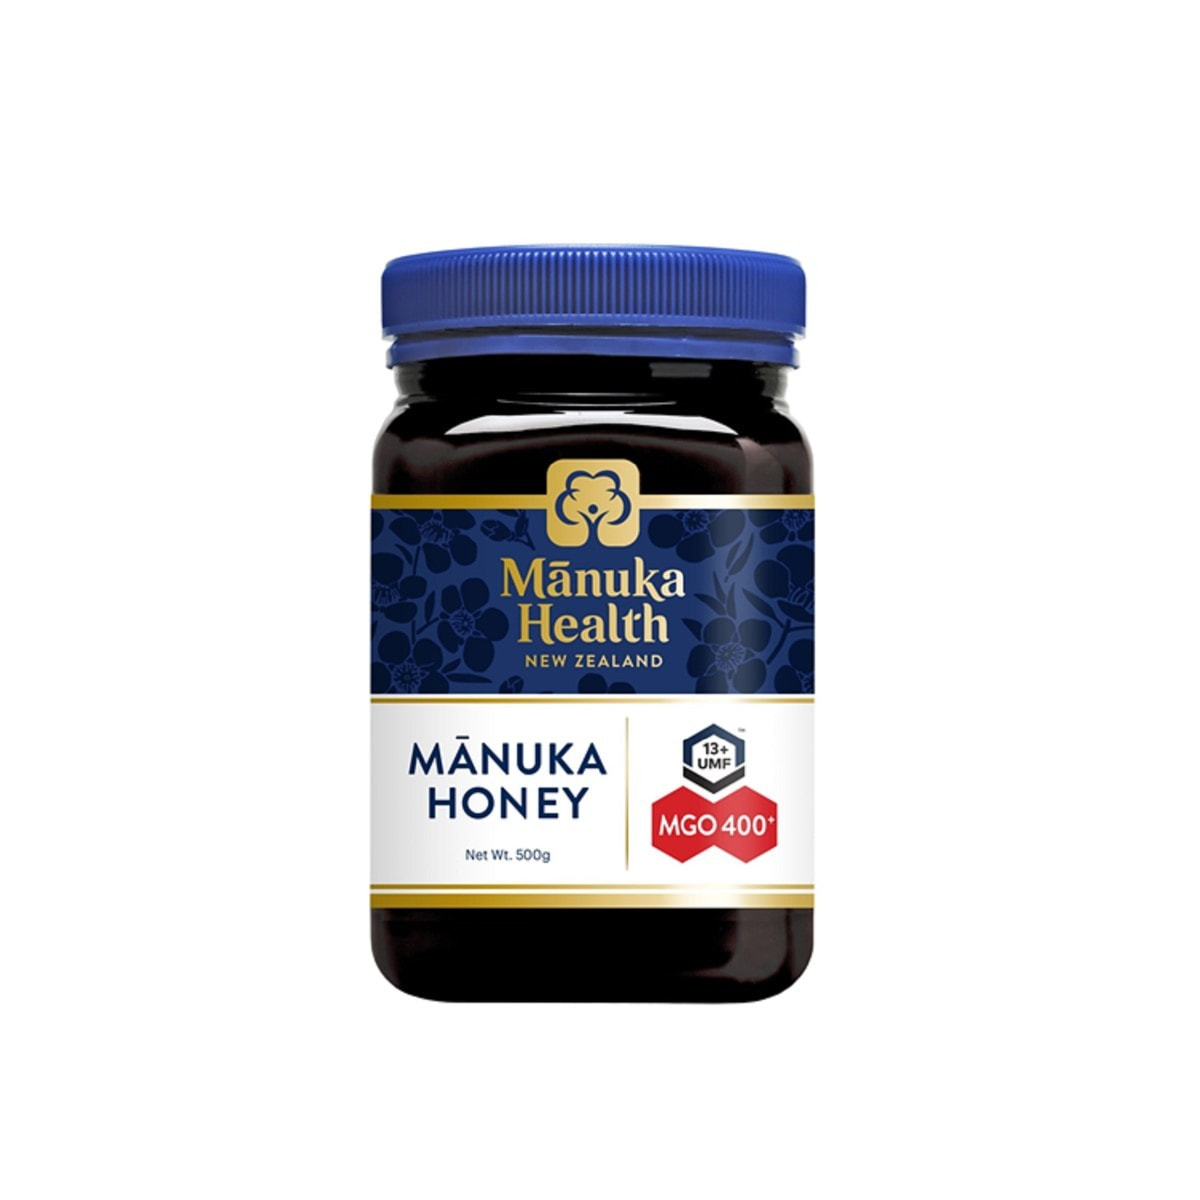 Manuka Health（マヌカヘルス）マヌカハニー MGO400/UMF13 500gの卸 ...